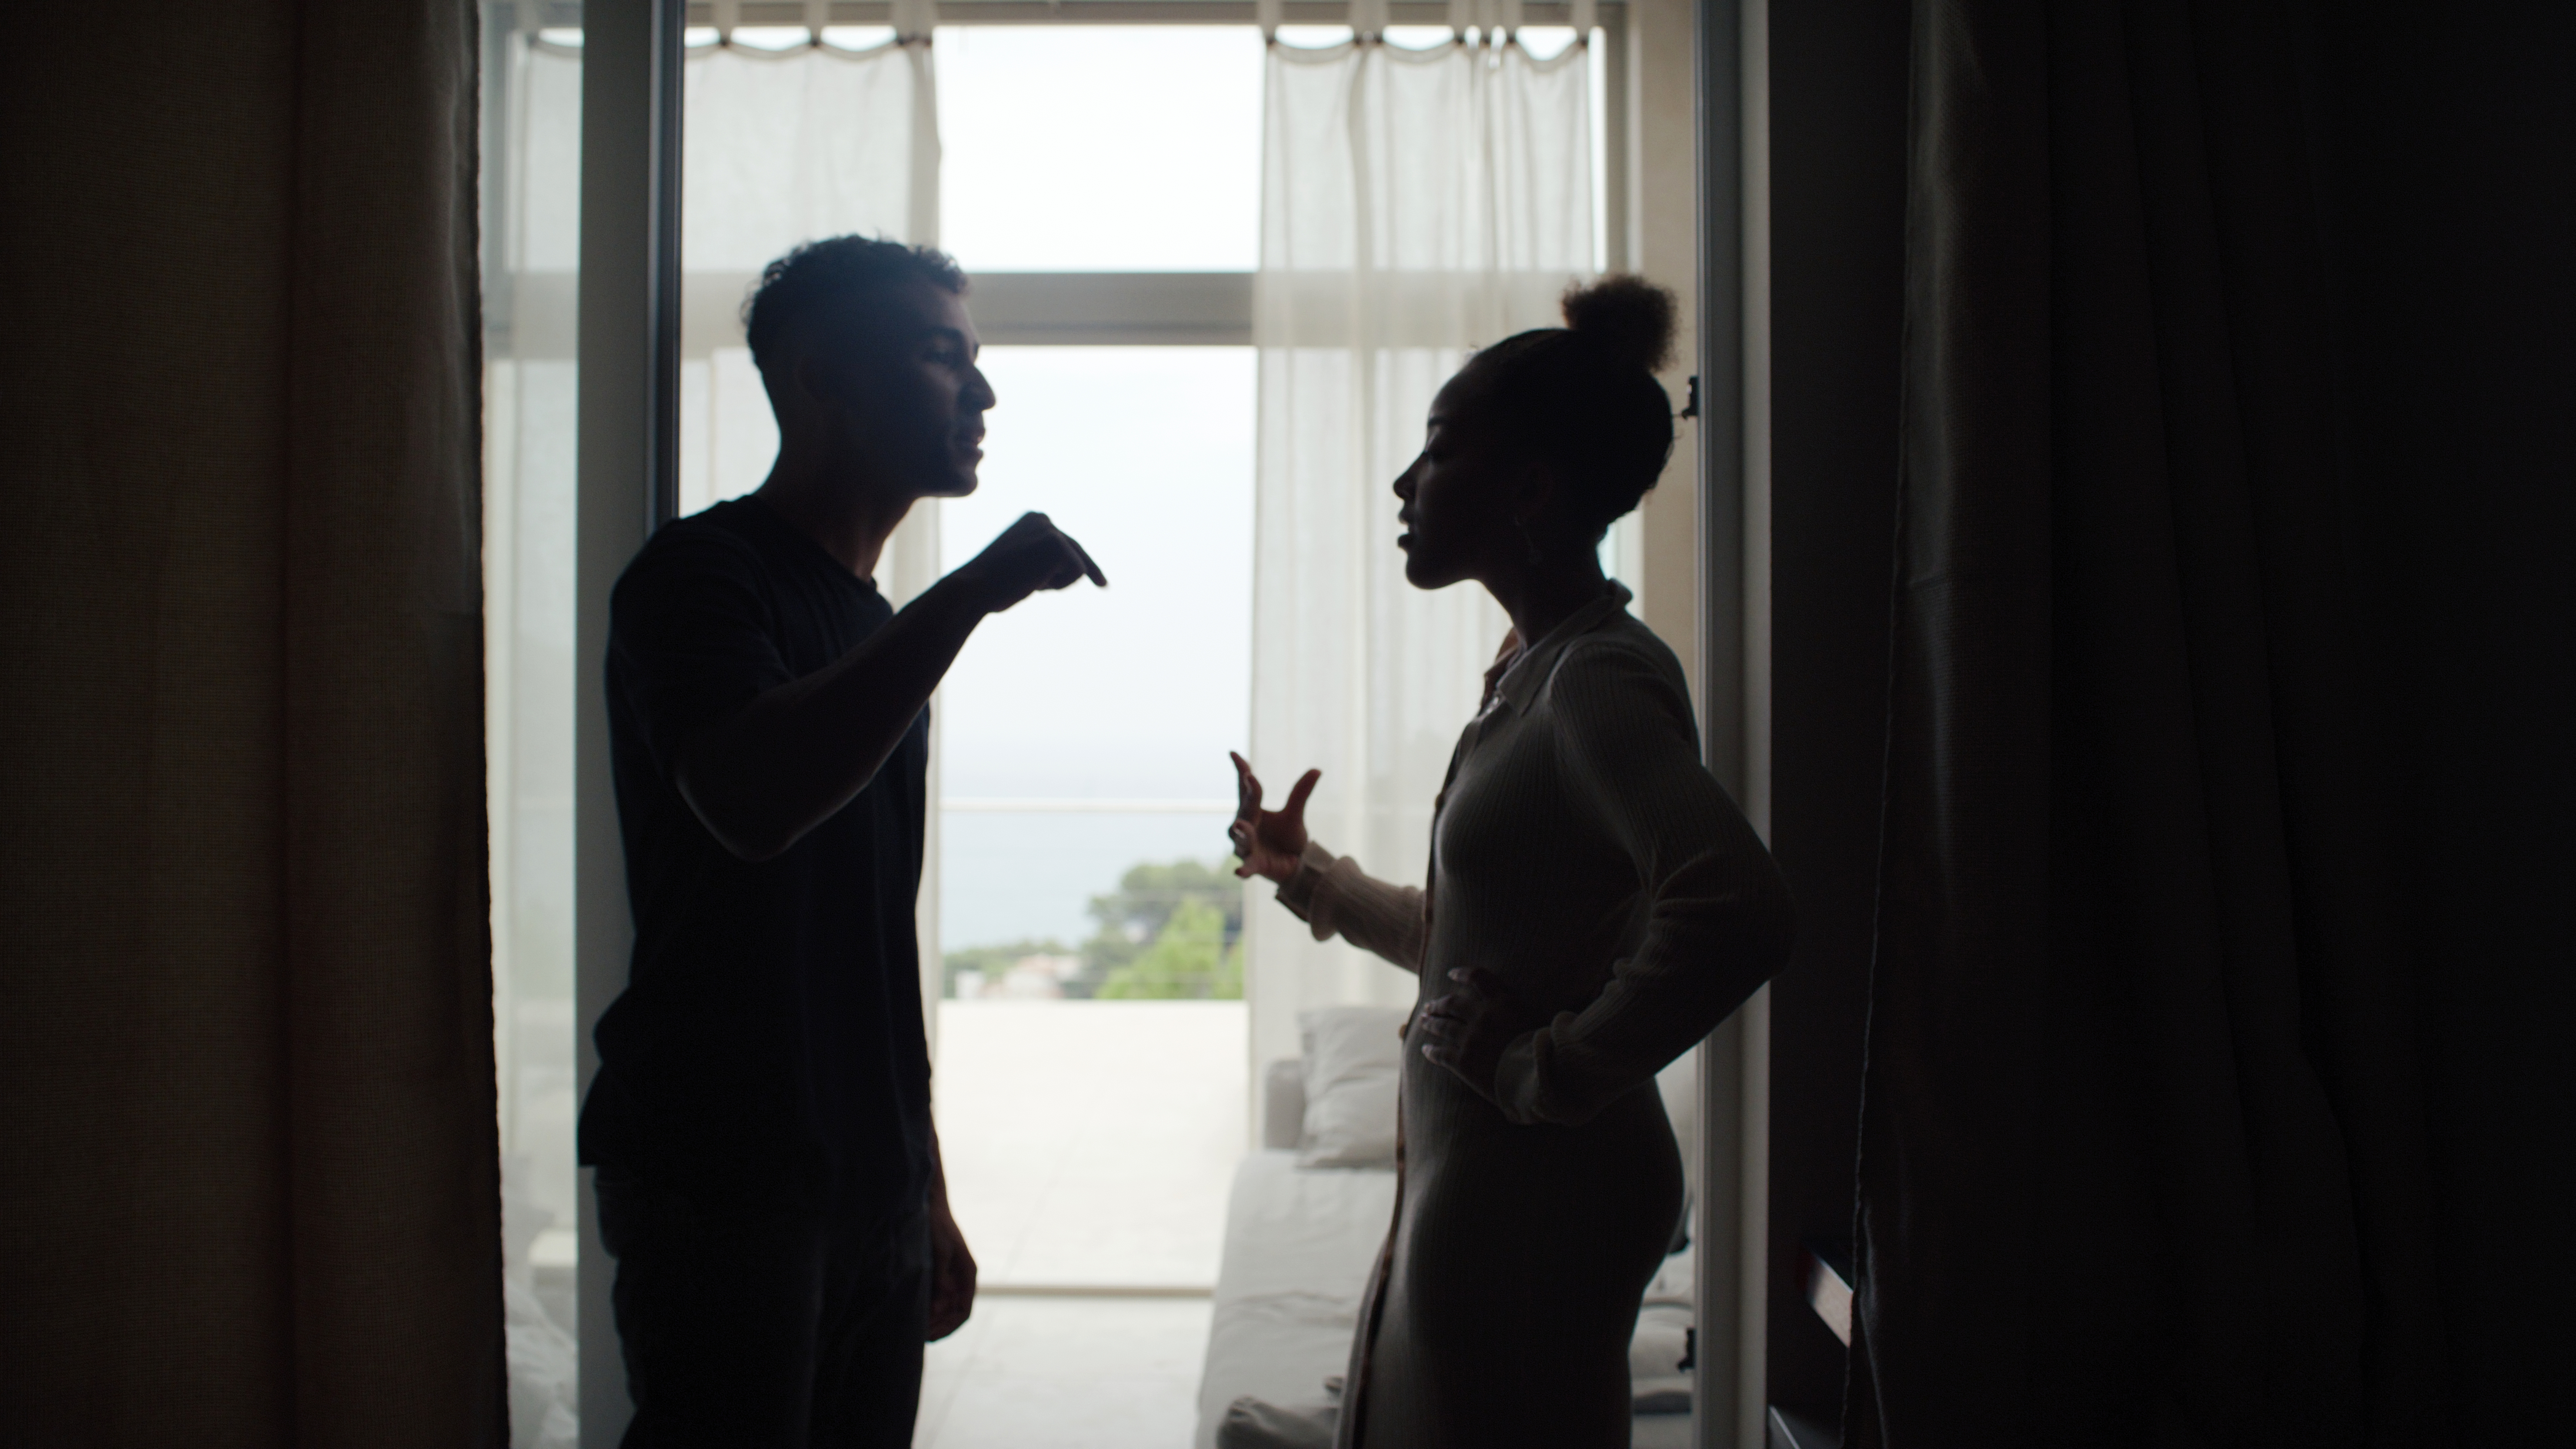 Couple malheureux se disputant et faisant des gestes dans le salon. Crise relationnelle | Source : Getty Images